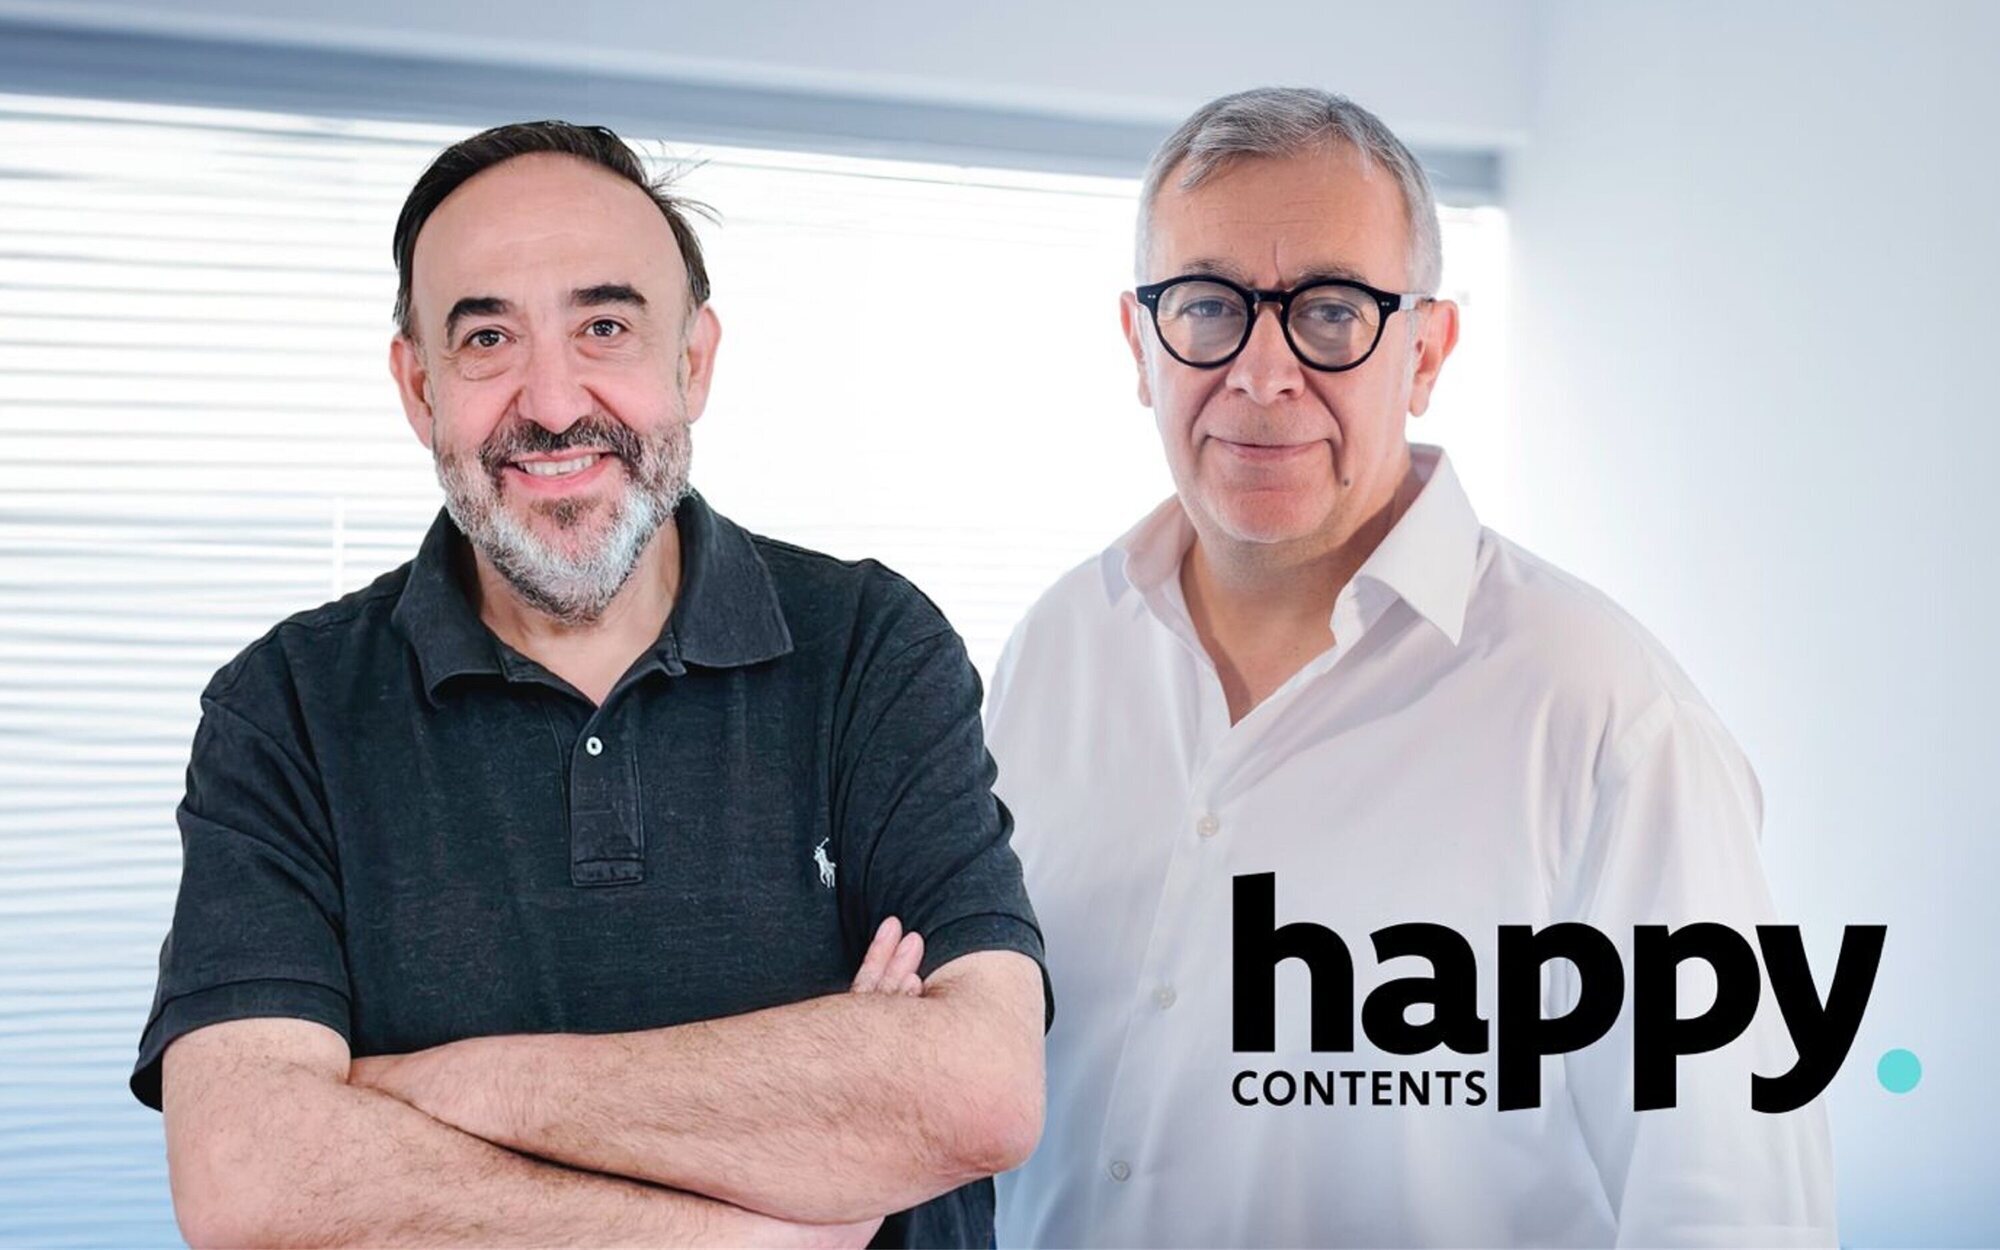 La productora de formatos como 'Gente maravillosa' cambia su nombre de Happy Ending TV a Happy Contents